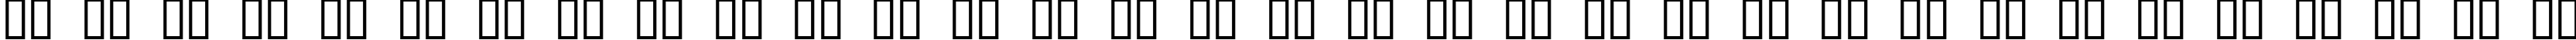 Пример написания русского алфавита шрифтом Bonk Fatty